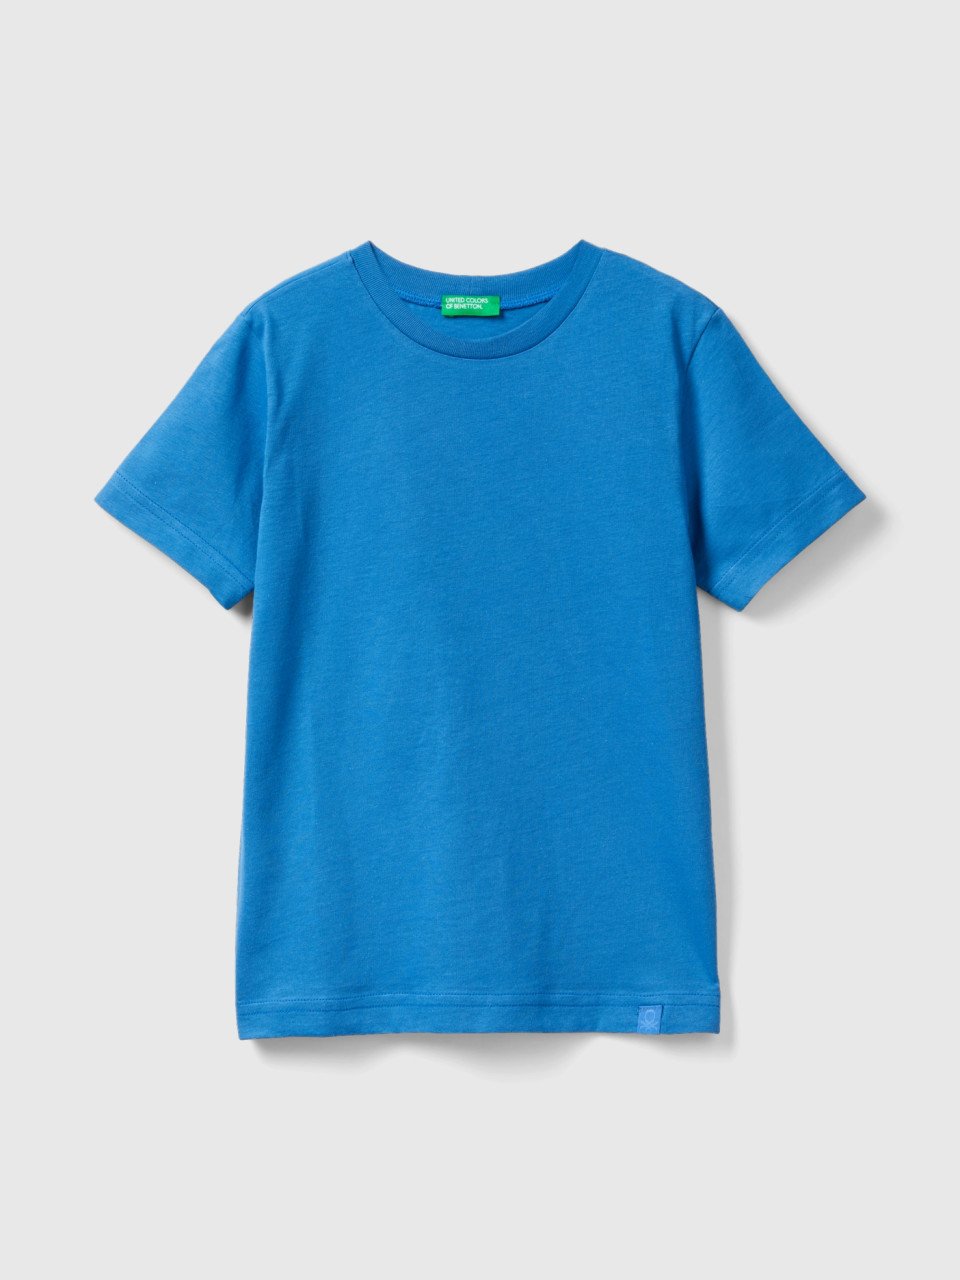 Benetton, Camiseta De Algodón Orgánico, Azul, Niños